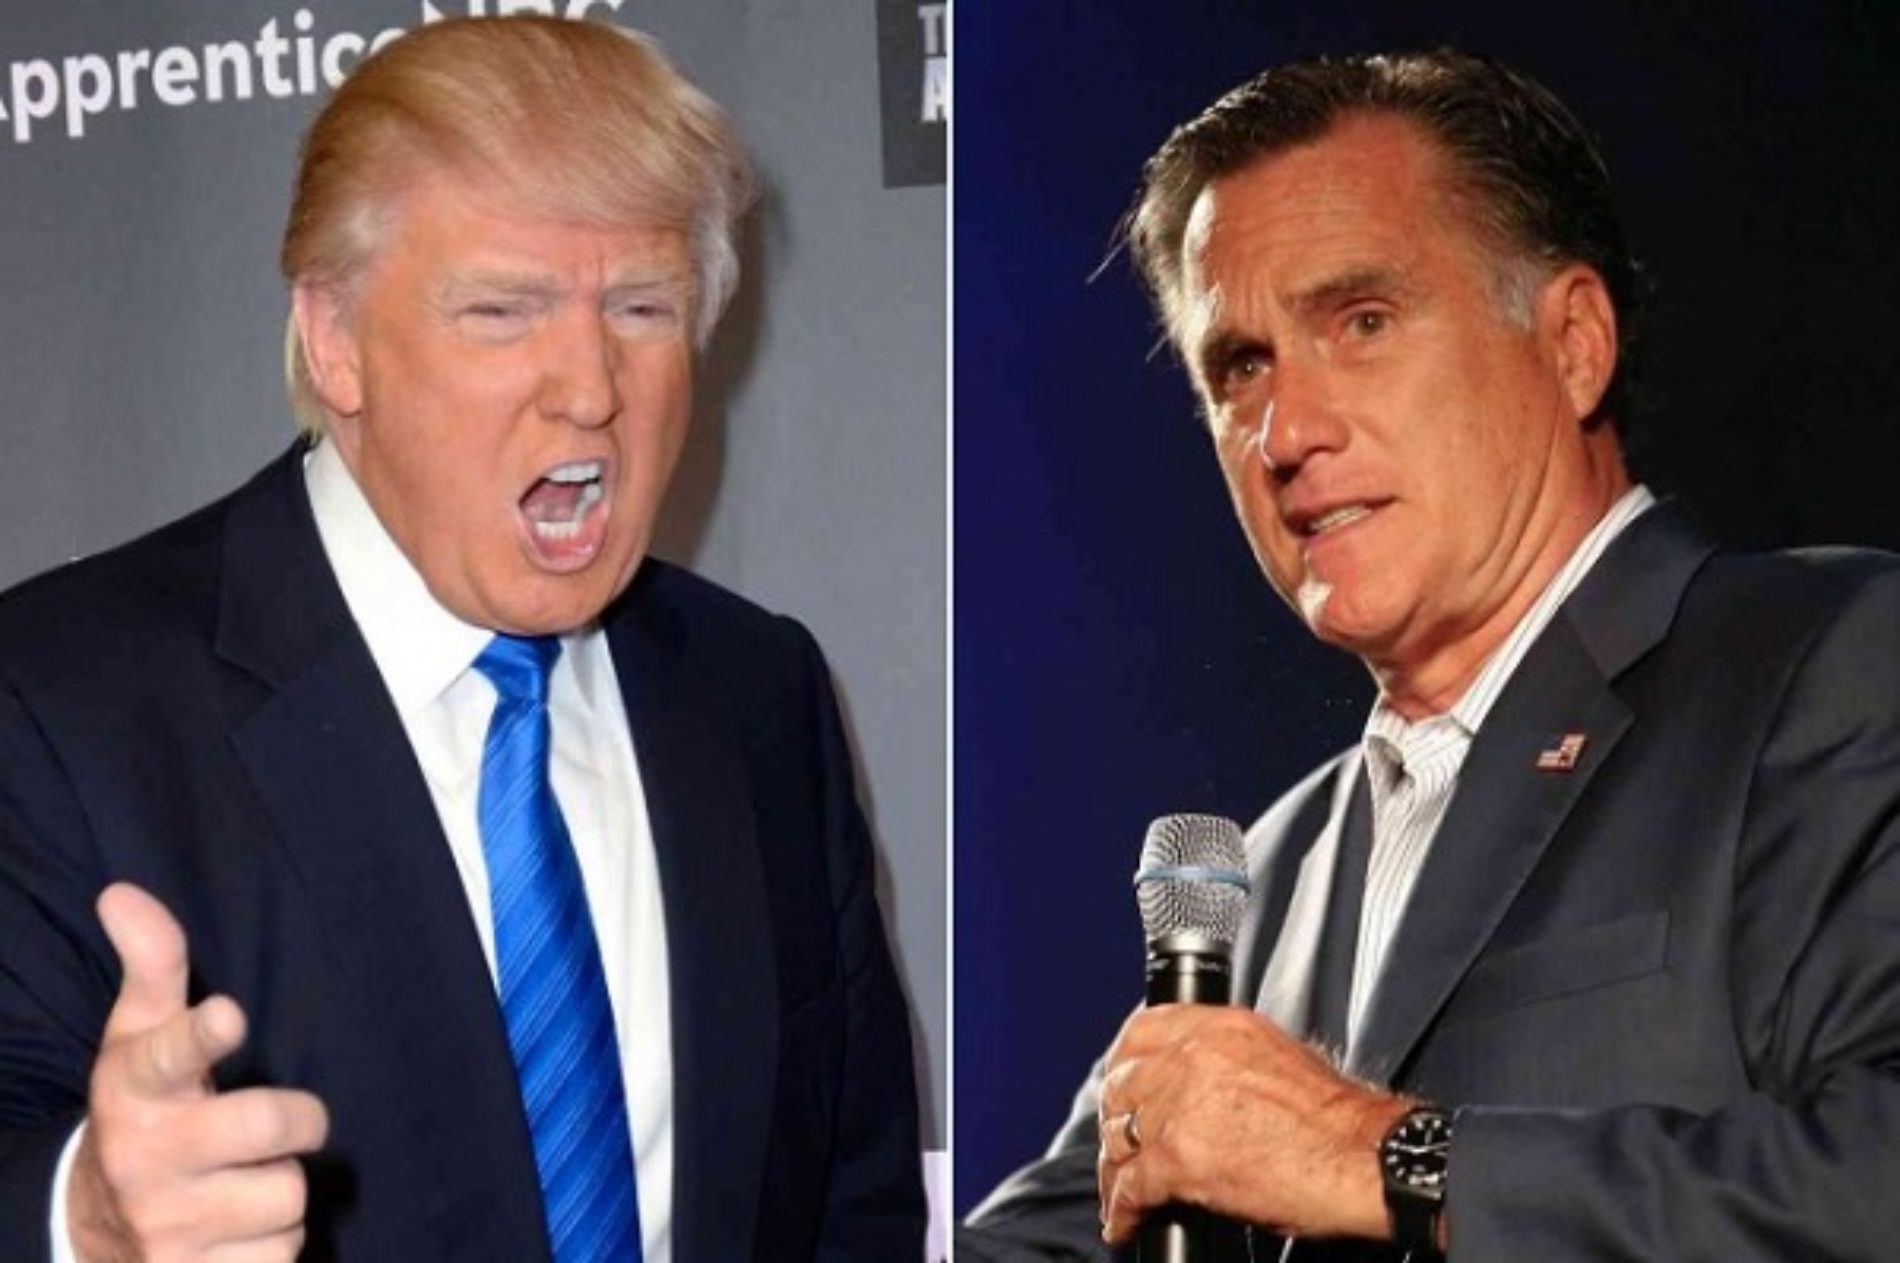 Mitt Romney Blasts Donald Trump, Trump Hits Back With Blowjob Jibe